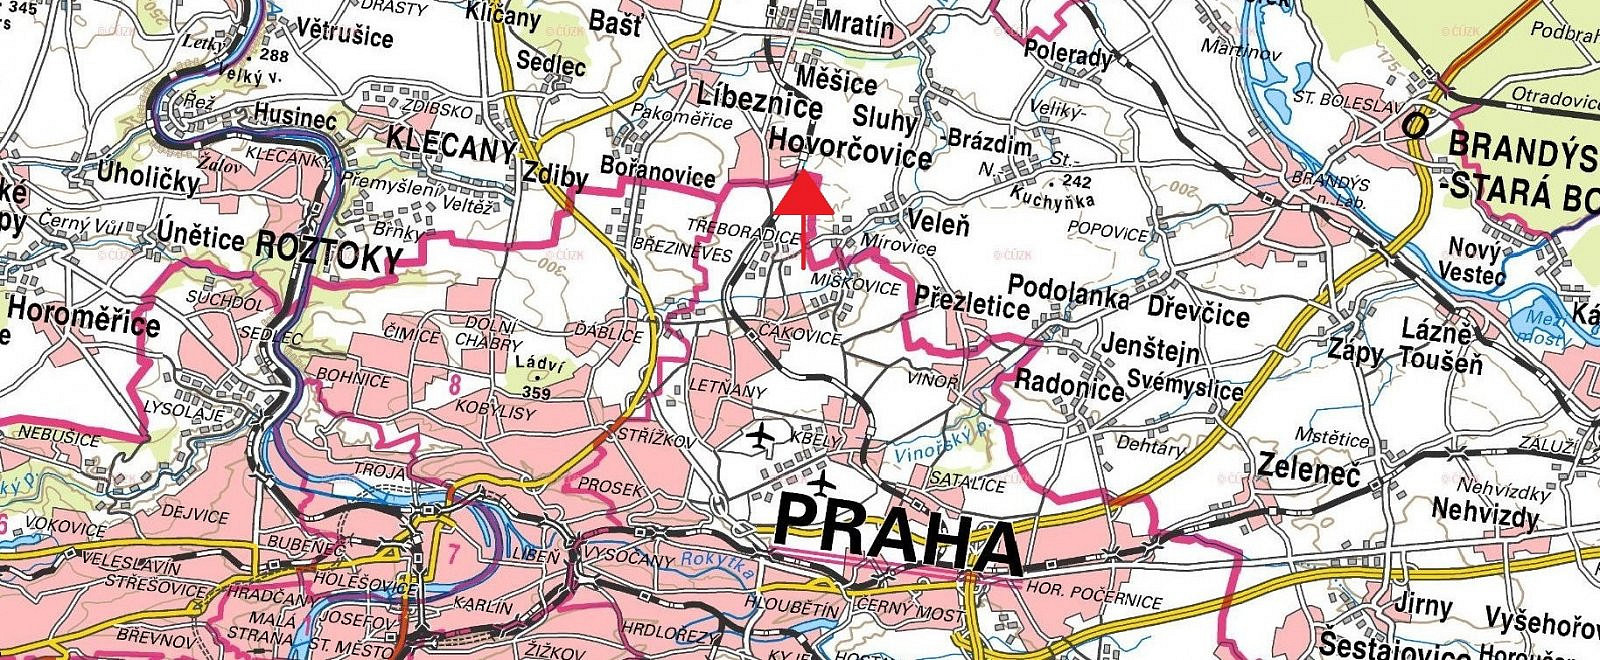 Veleň, okres Praha-východ